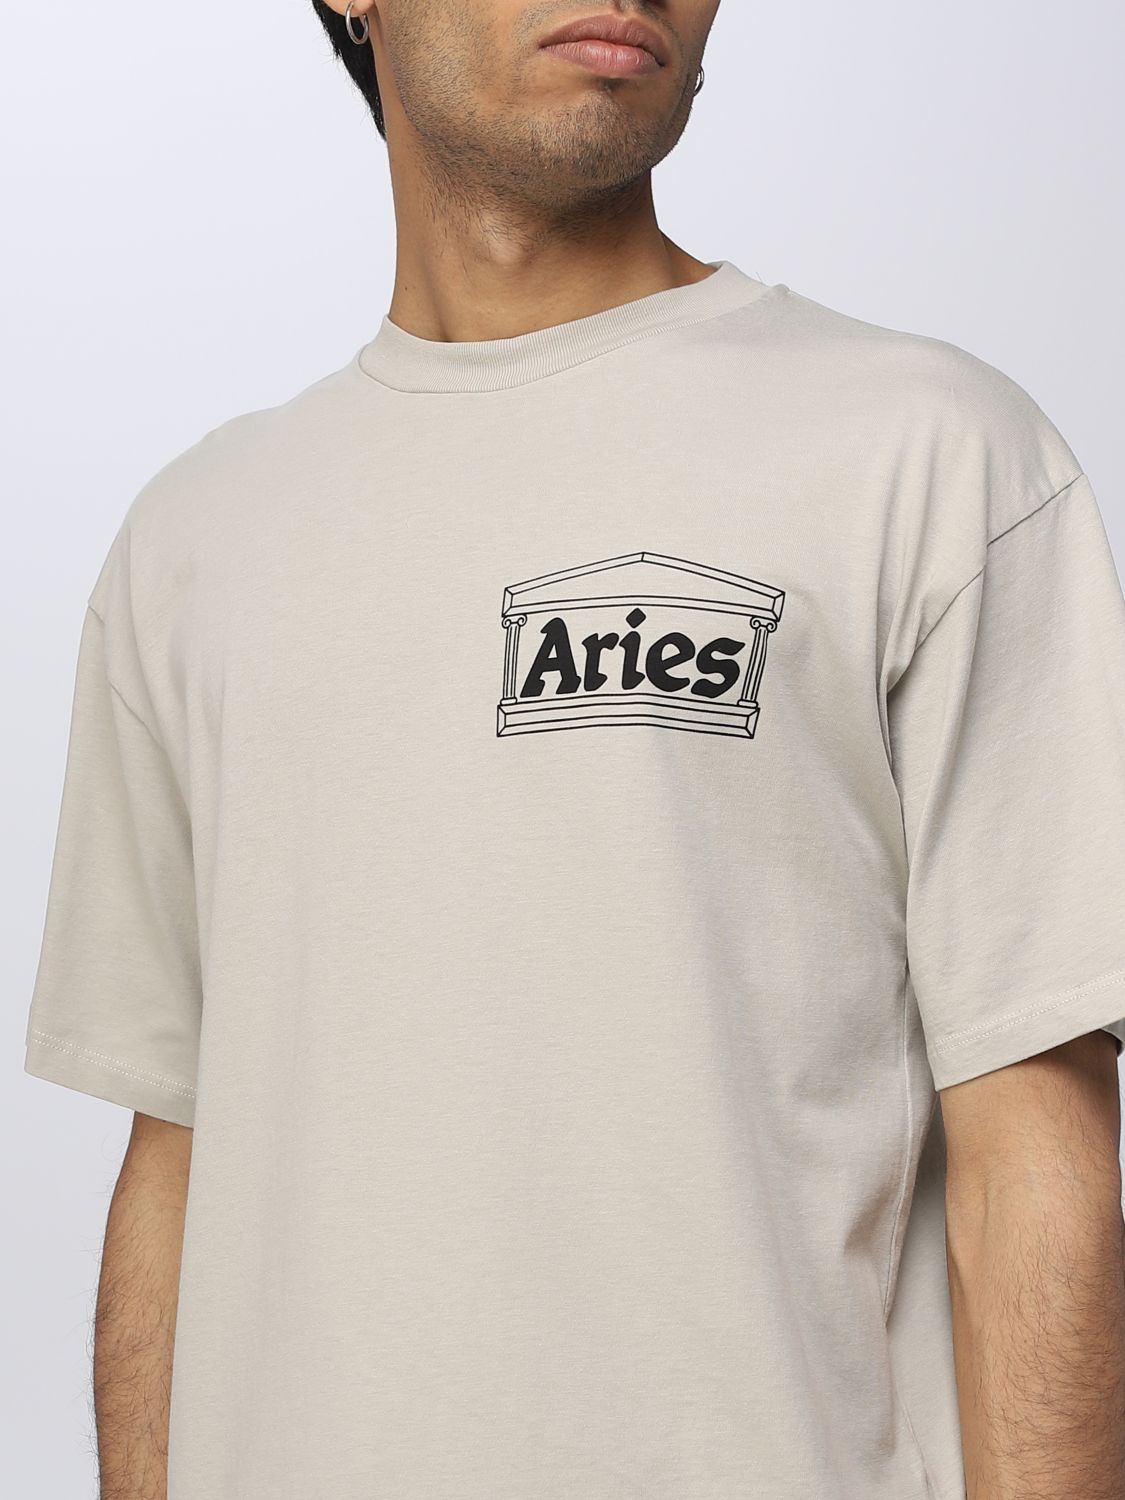 T恤 Aries: Ariest恤男士 灰色 4